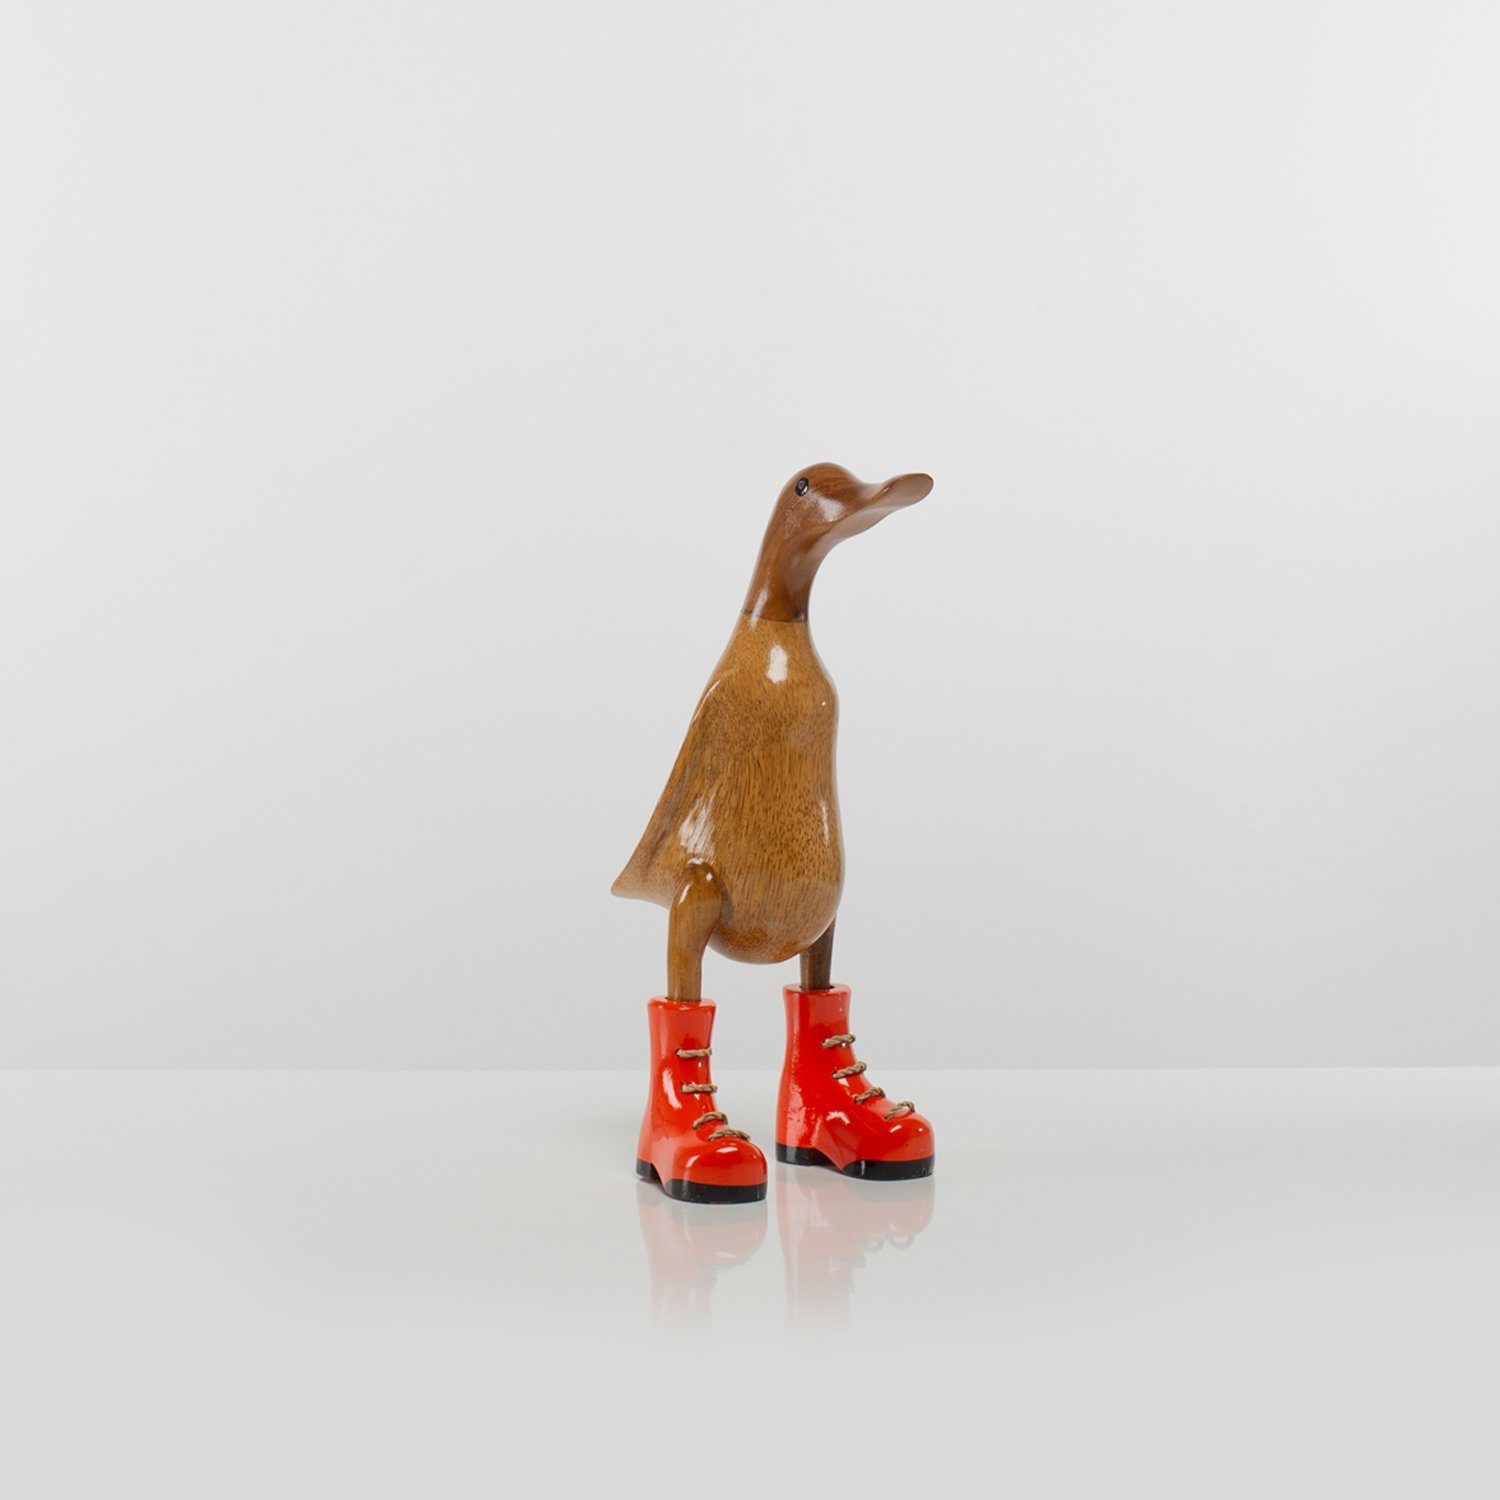 Rikmani Dekofigur Holzfigur Ente Stiefel - Handgefertigte Dekoration aus Holz Geschenk (3-er Set), 3 Holzarten orange